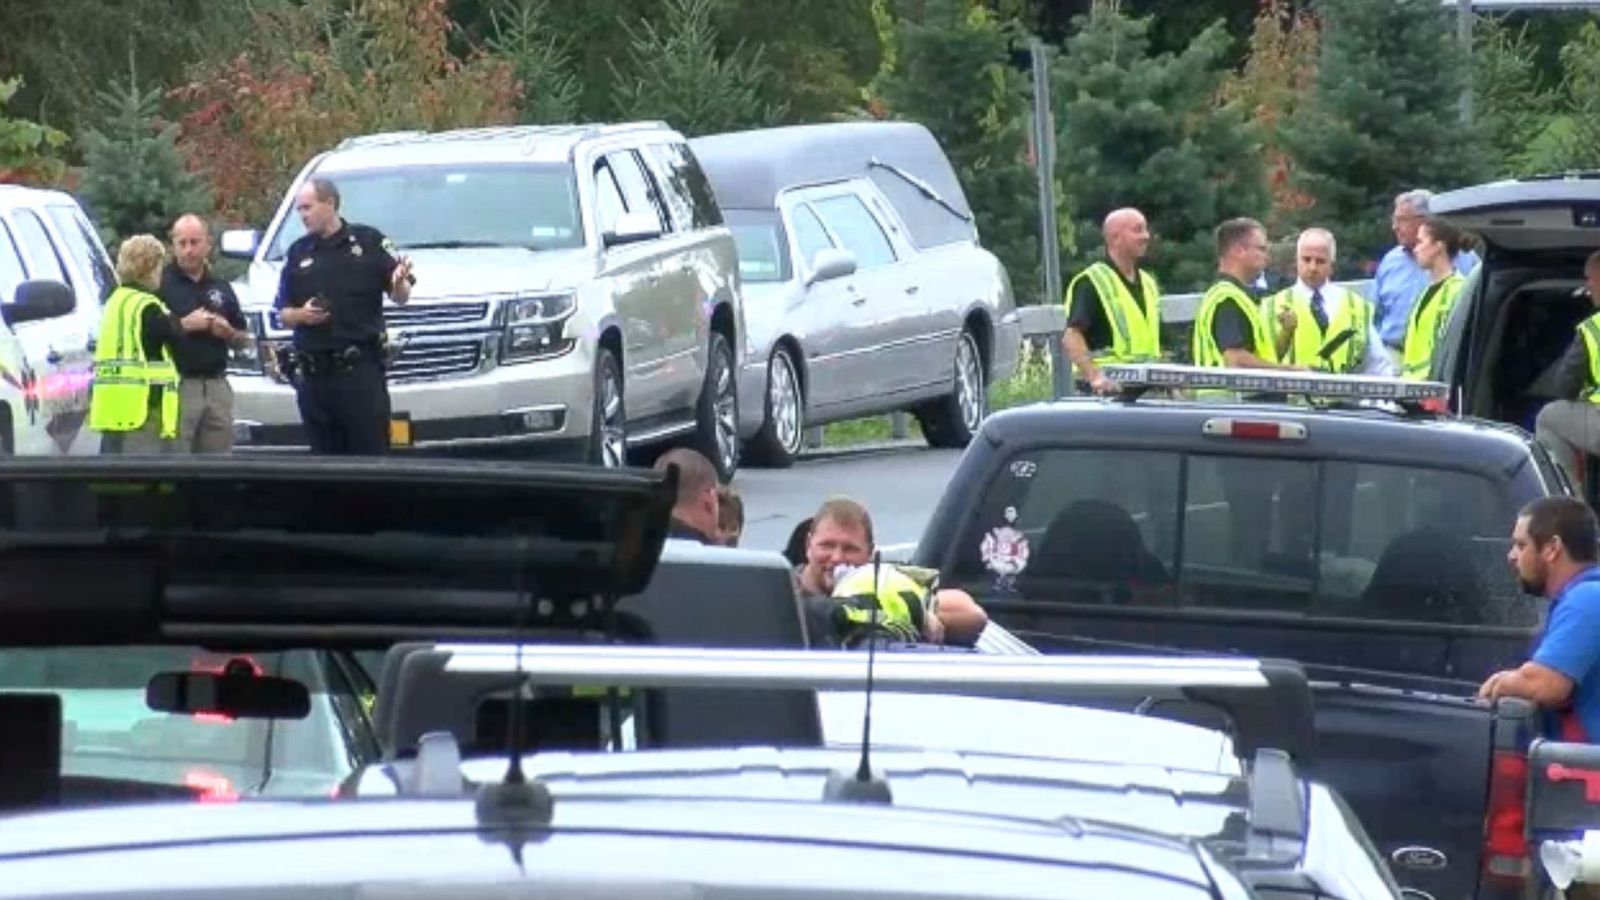 Twenty killed in horrific upstate NY limousine crash